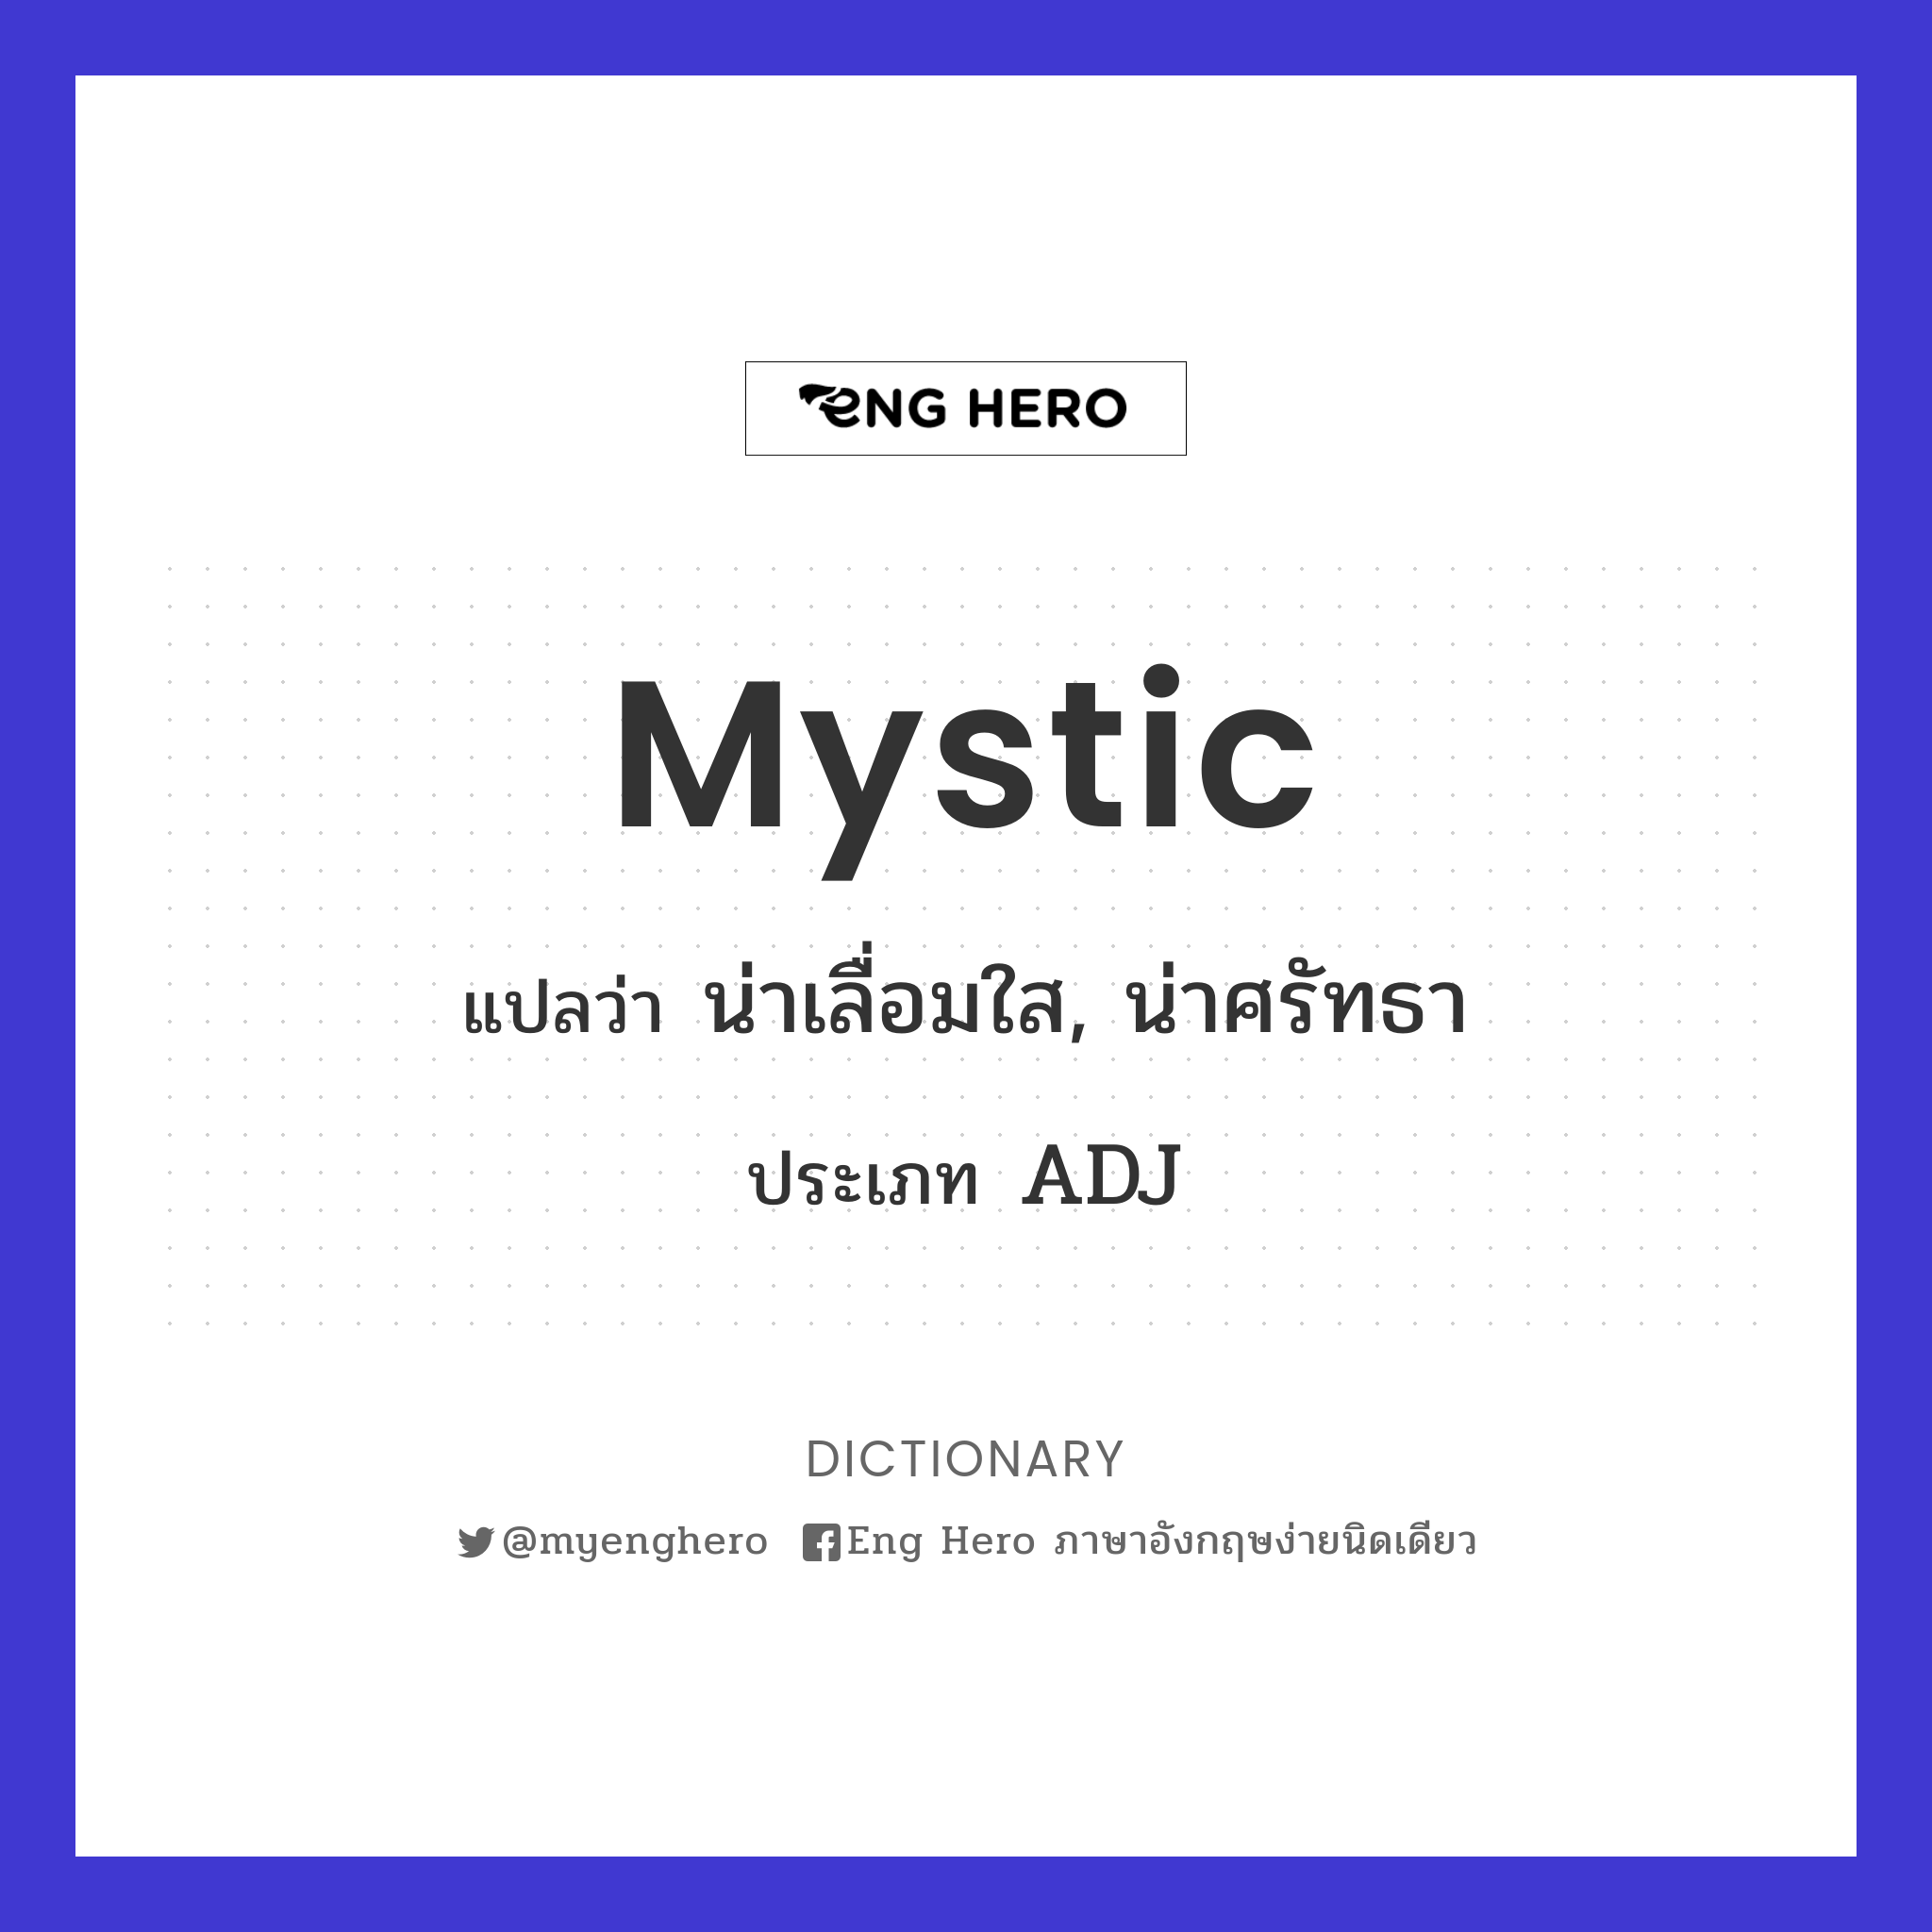 mystic